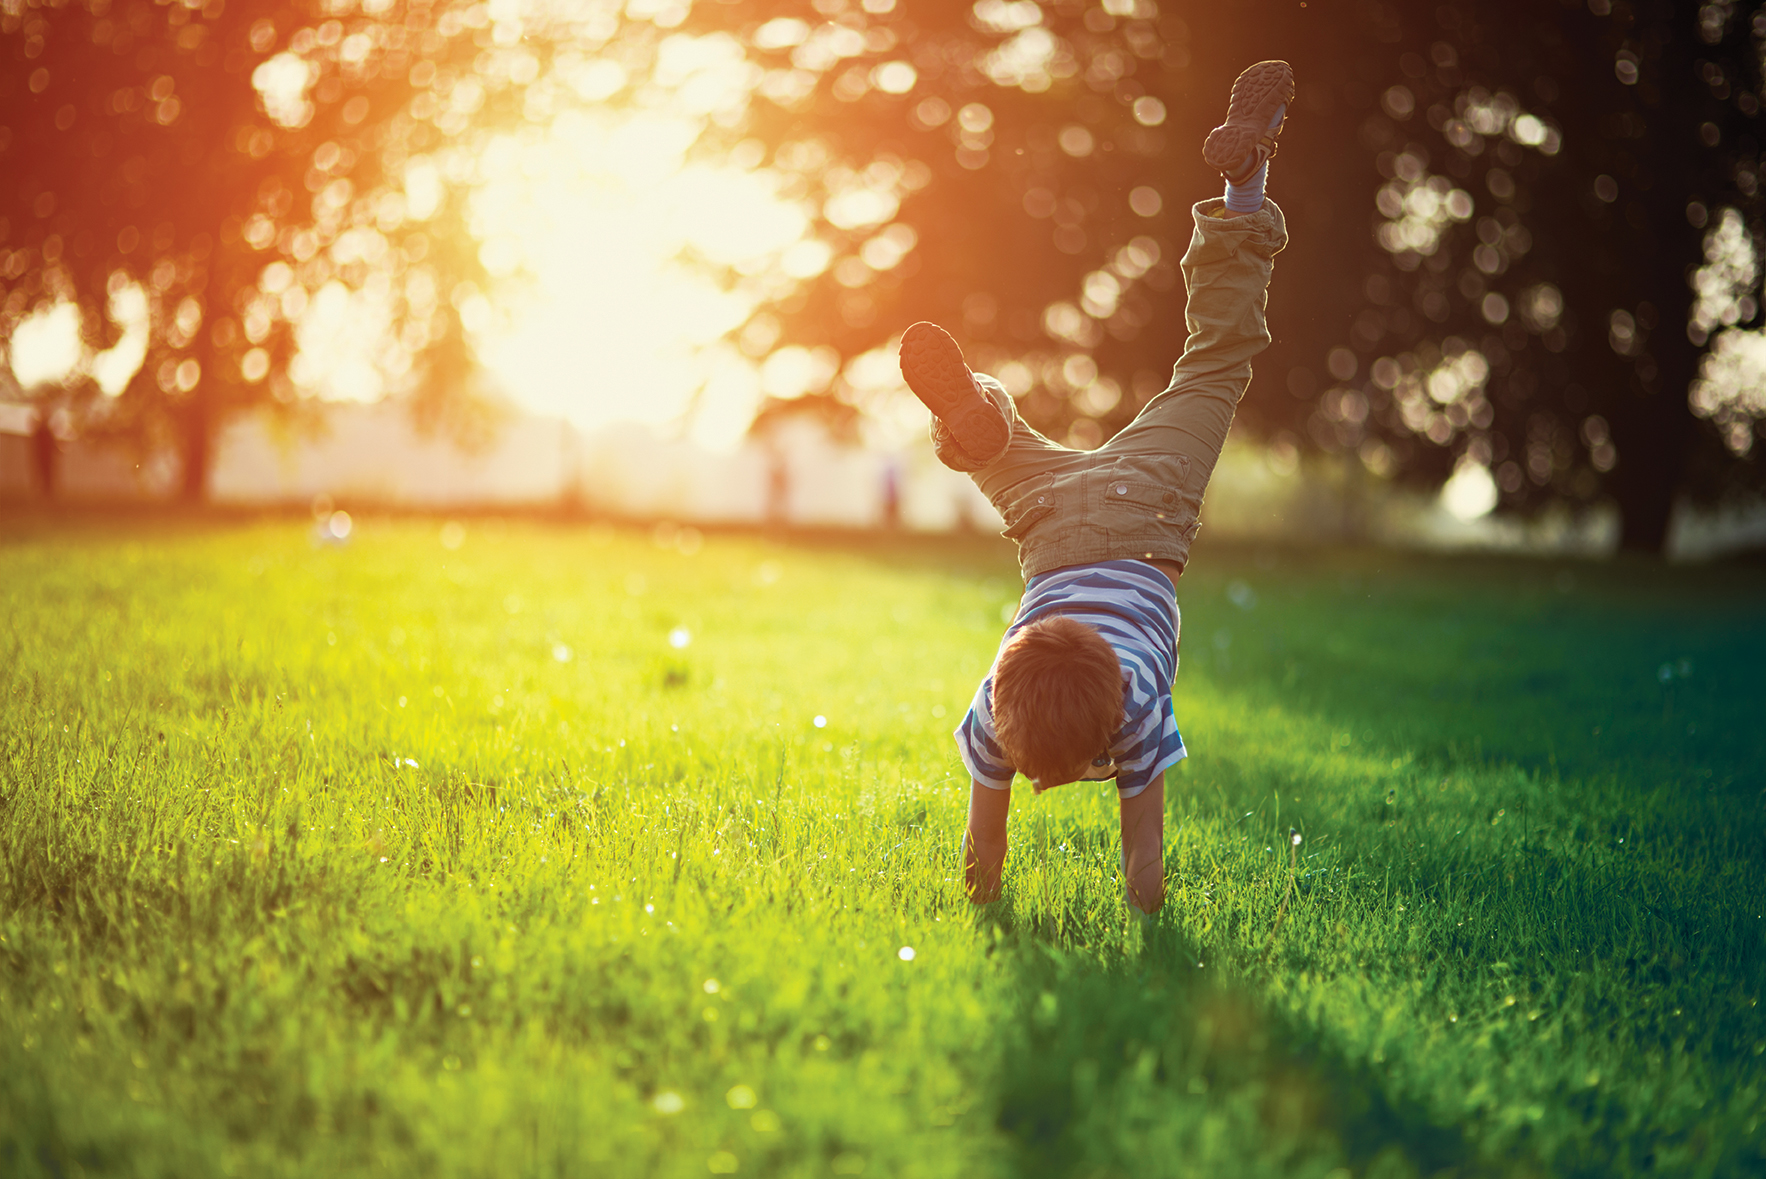 Portrait of a little boy having fun on grass in park